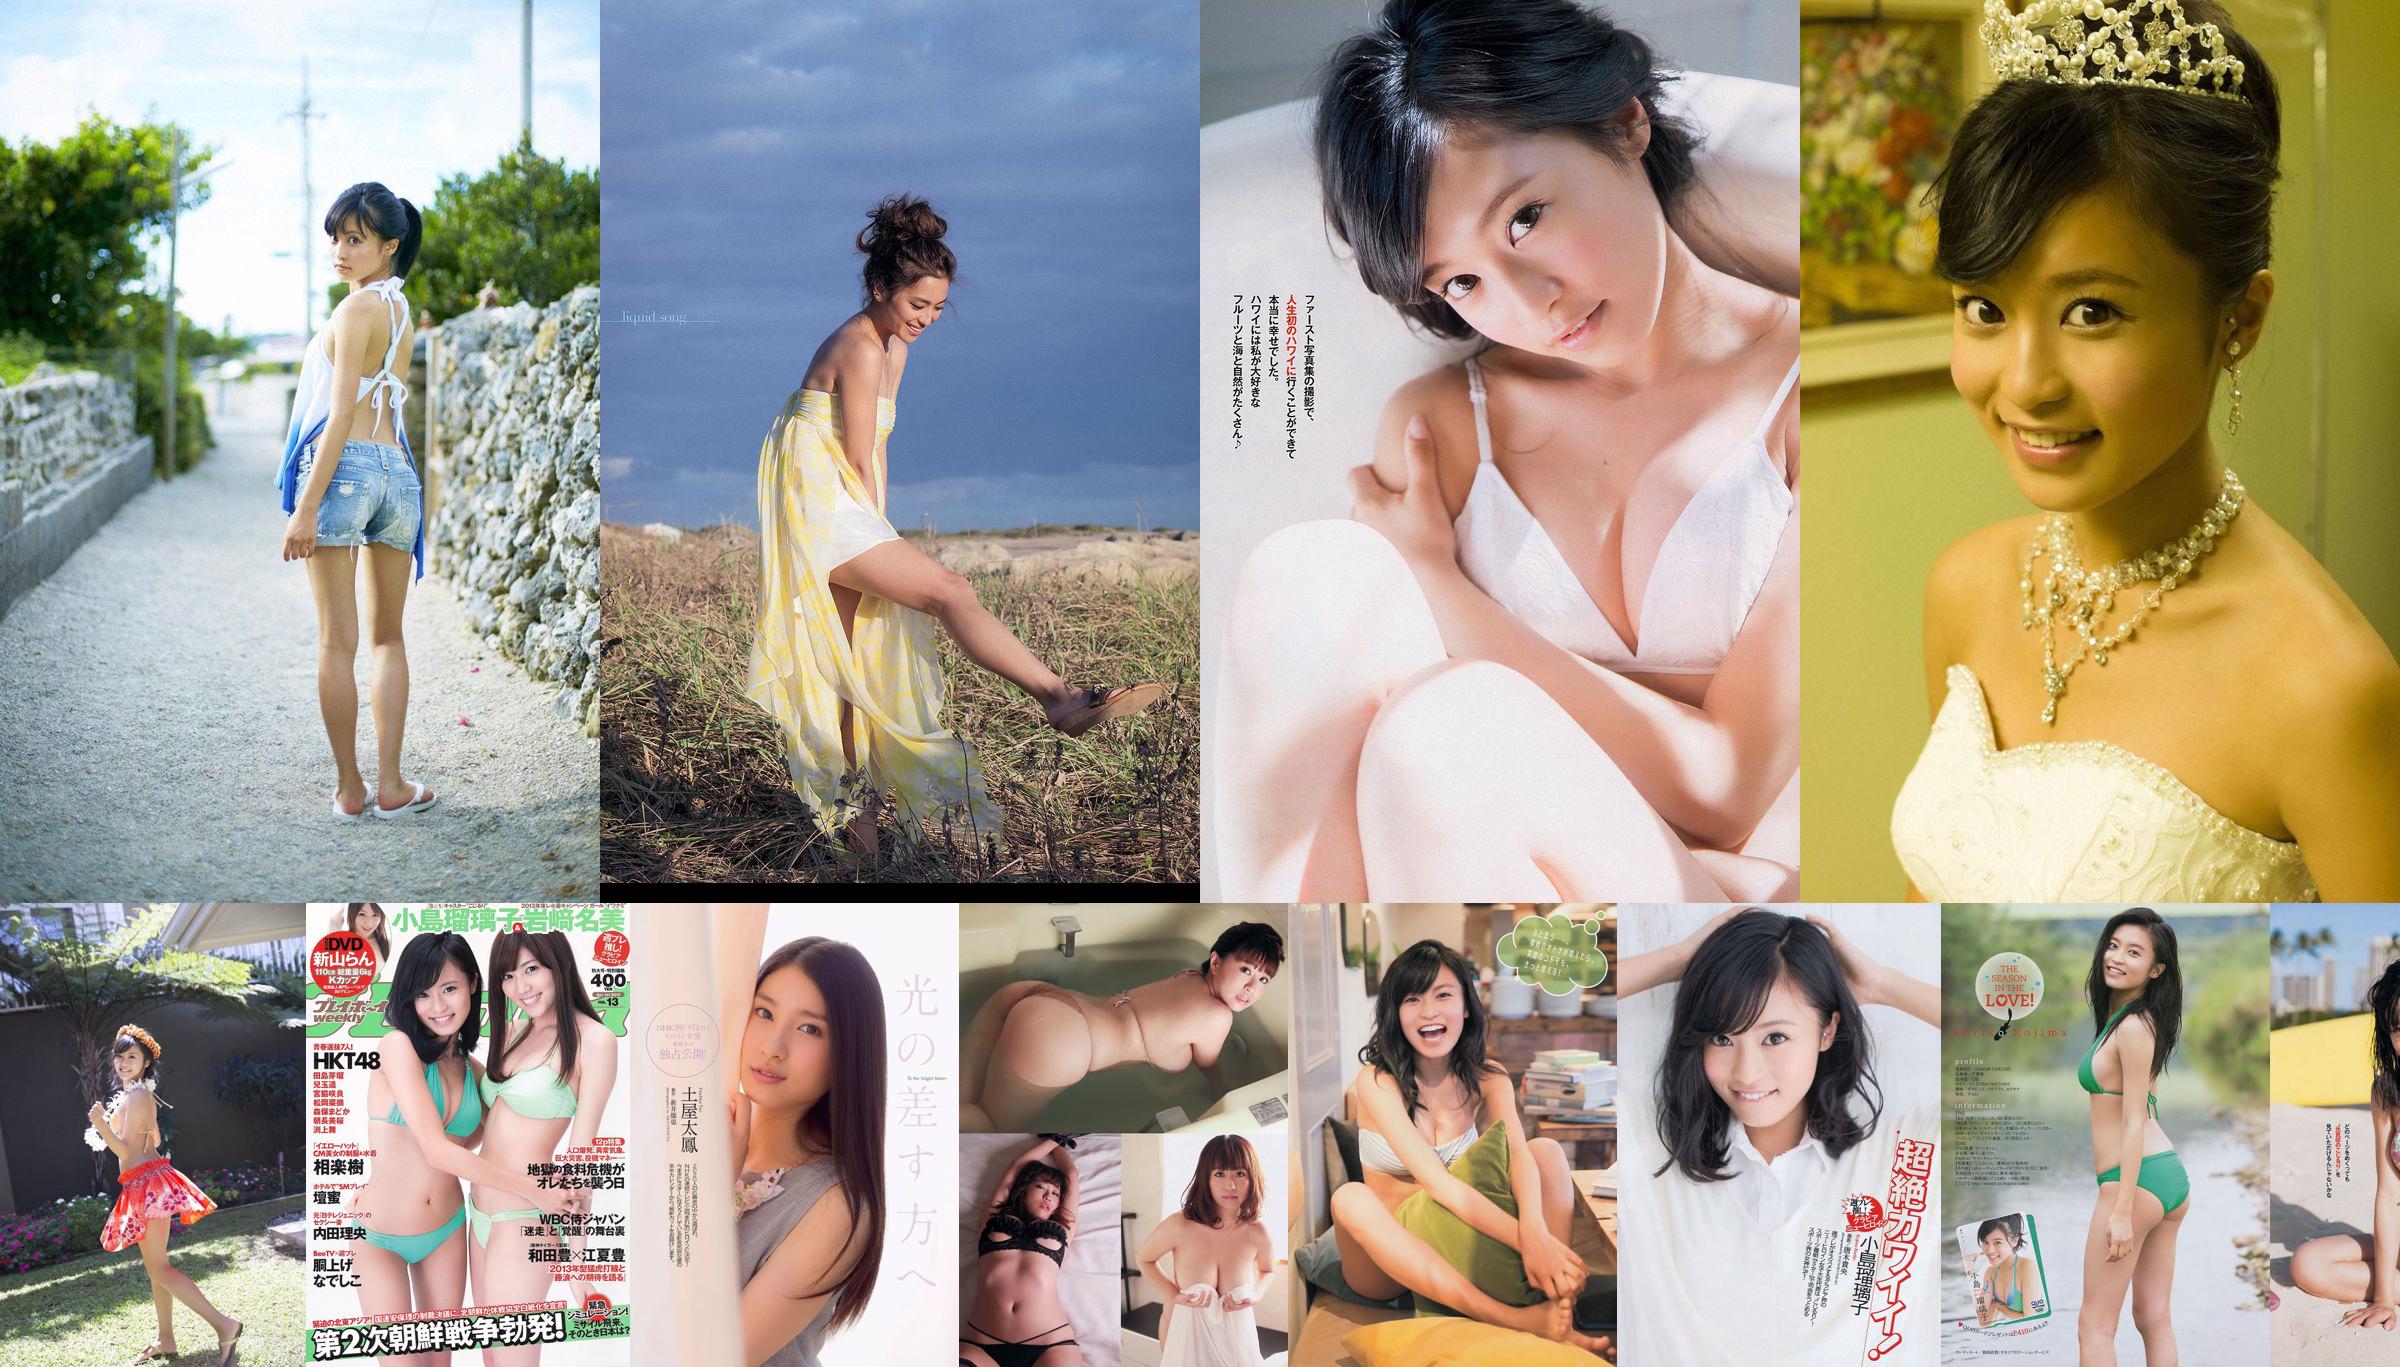 [Wöchentliche große Comic-Geister] Kojima Ruriko 2013 No.10 Photo Magazine No.7134a8 Seite 4